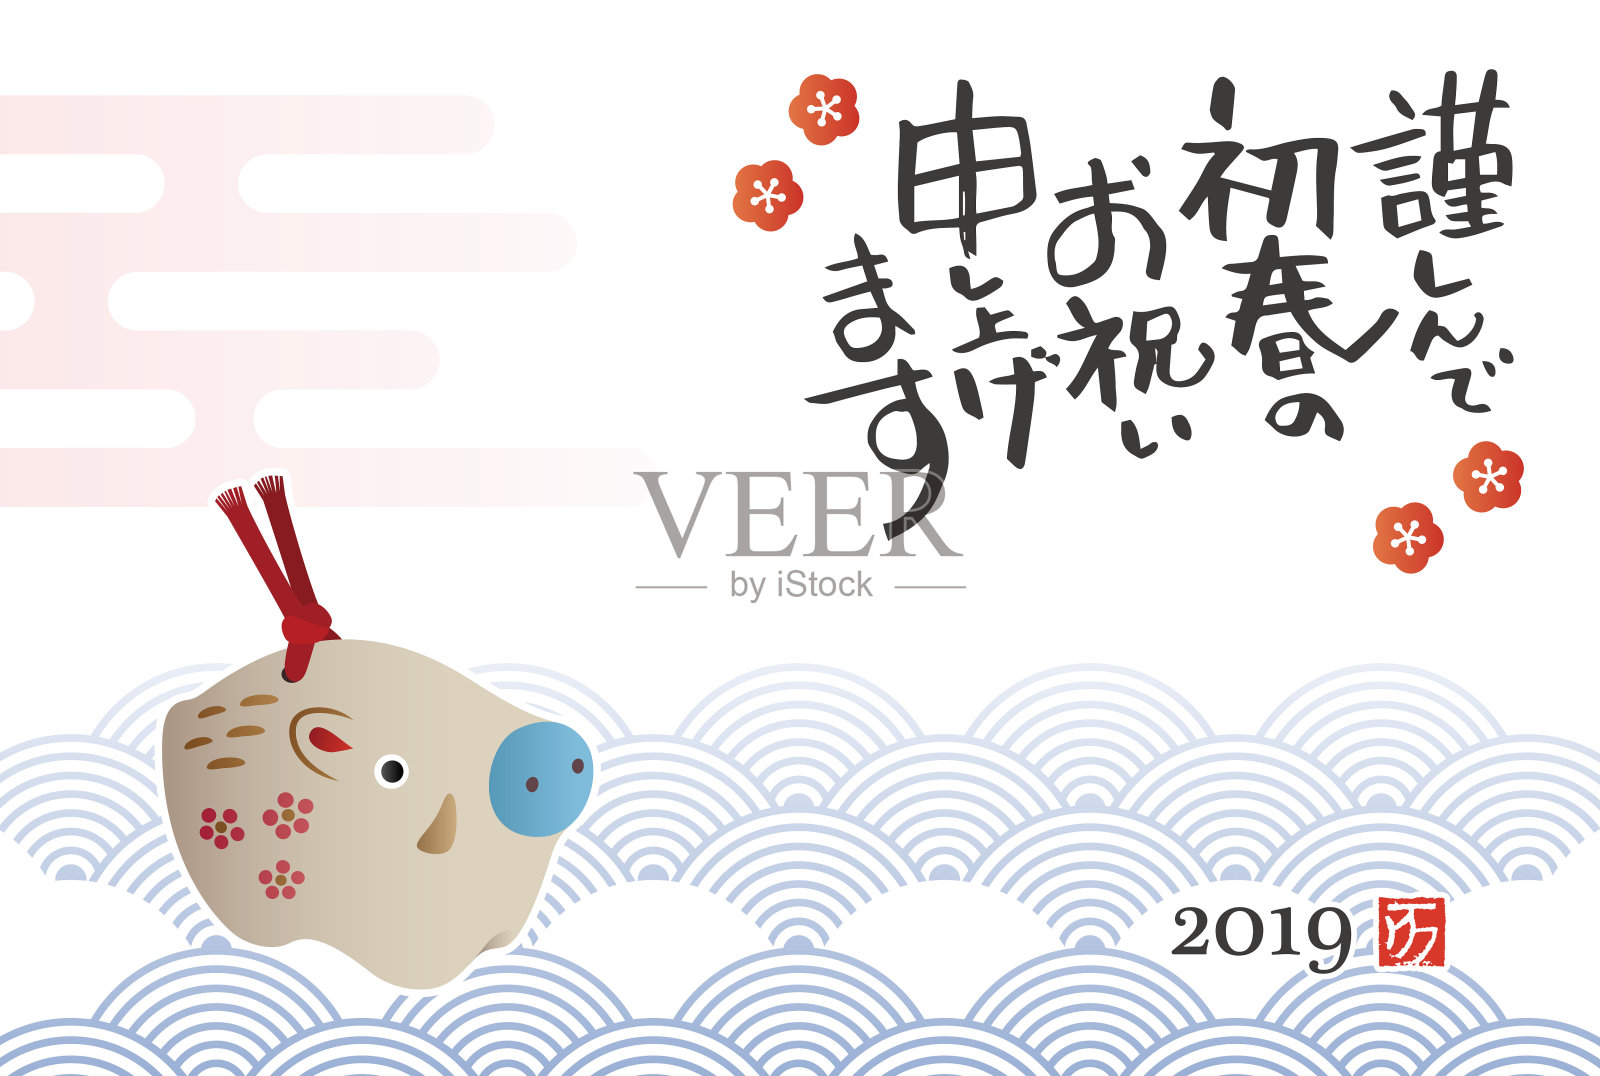 新年贺卡与中国生肖野猪陶瓷娃娃设计模板素材